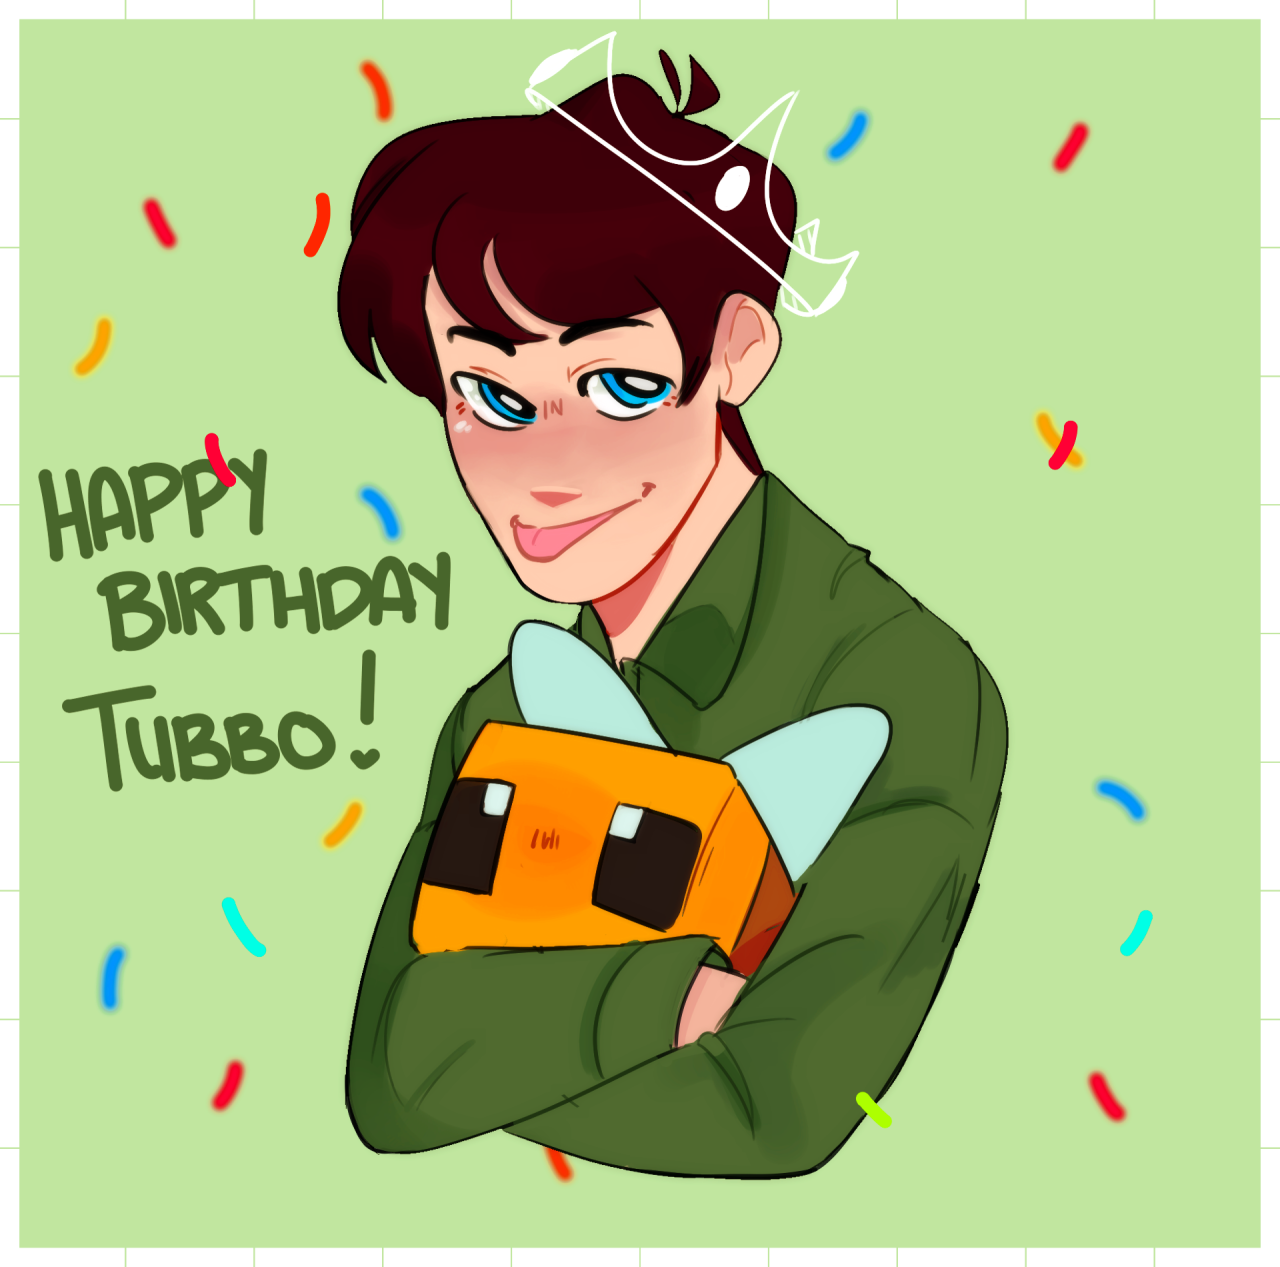 TUBBO BIRTHDAY TUBBO BIRTHDAY! HAPPY BIRTHDAY TUBBO